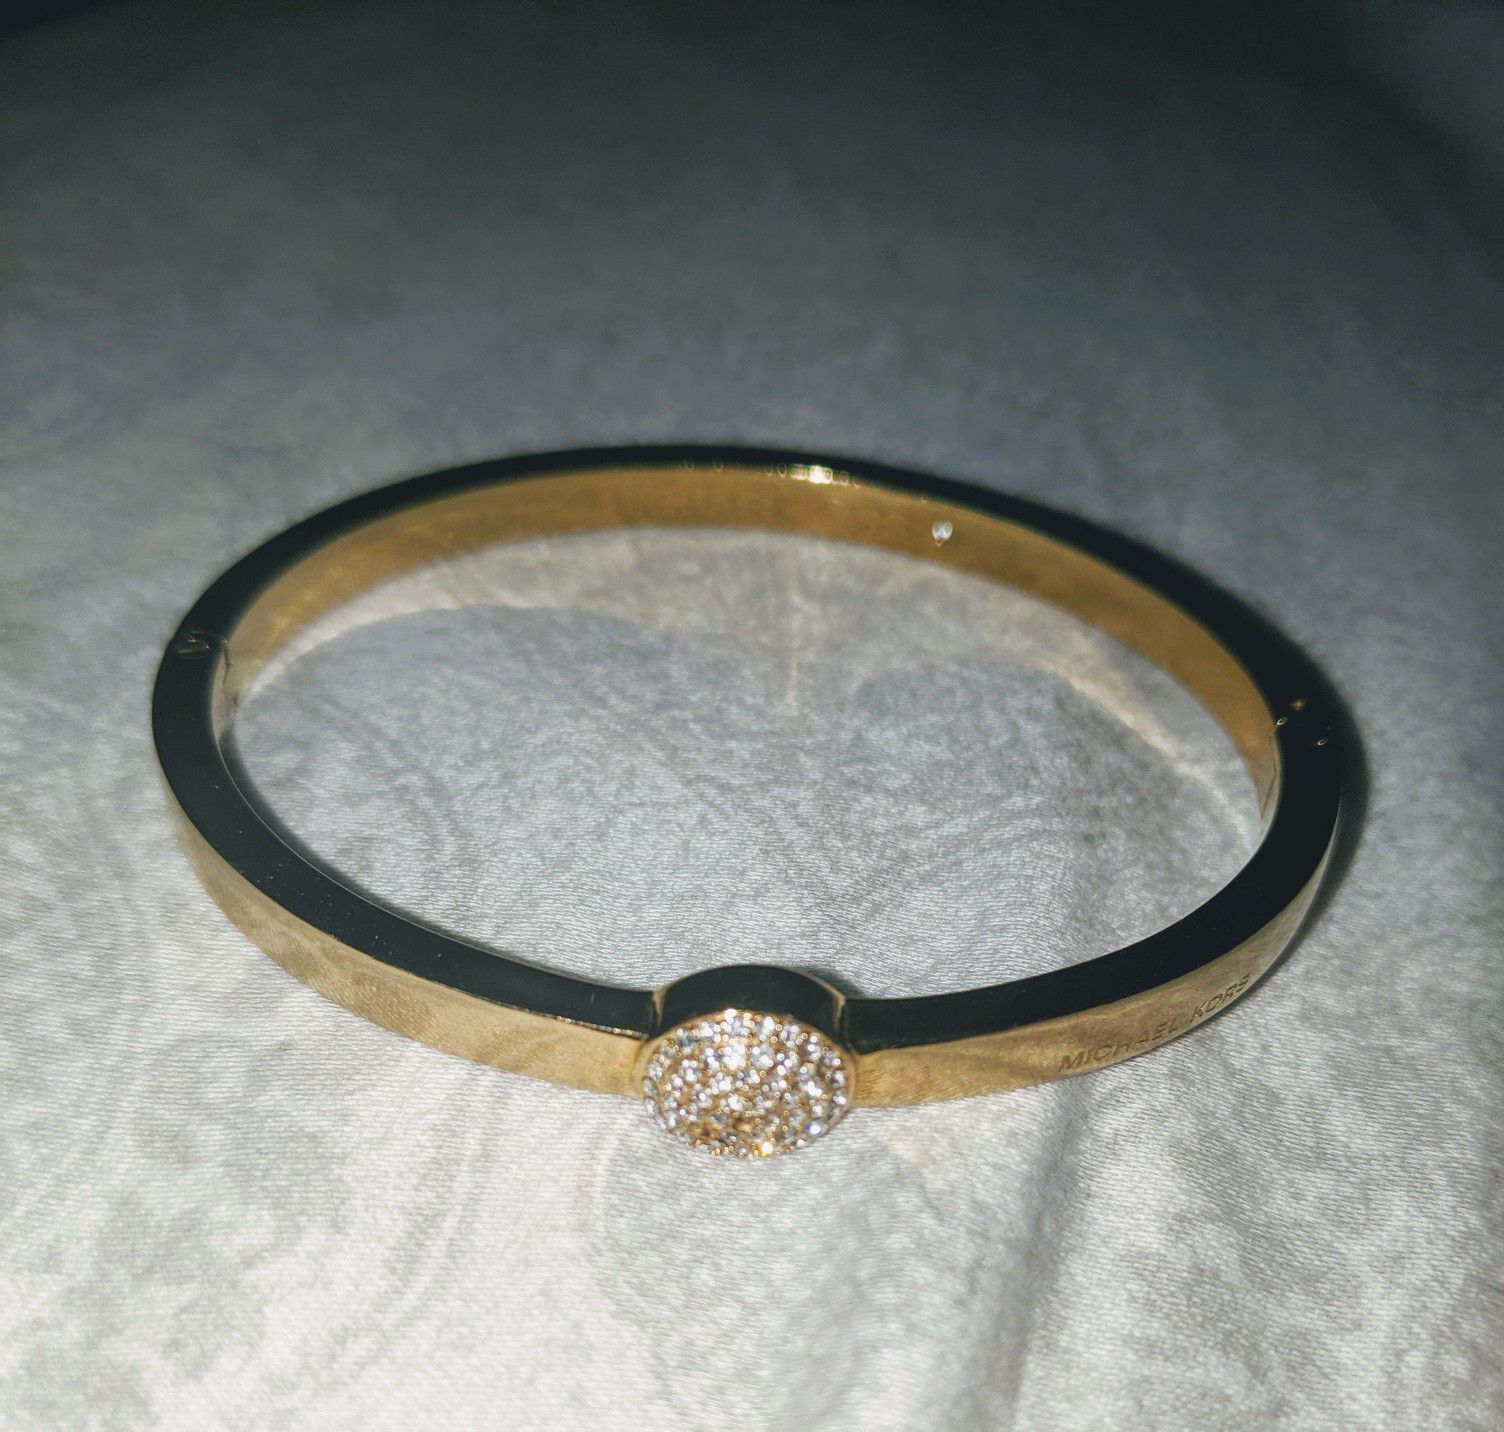 Michael Kors bracelet